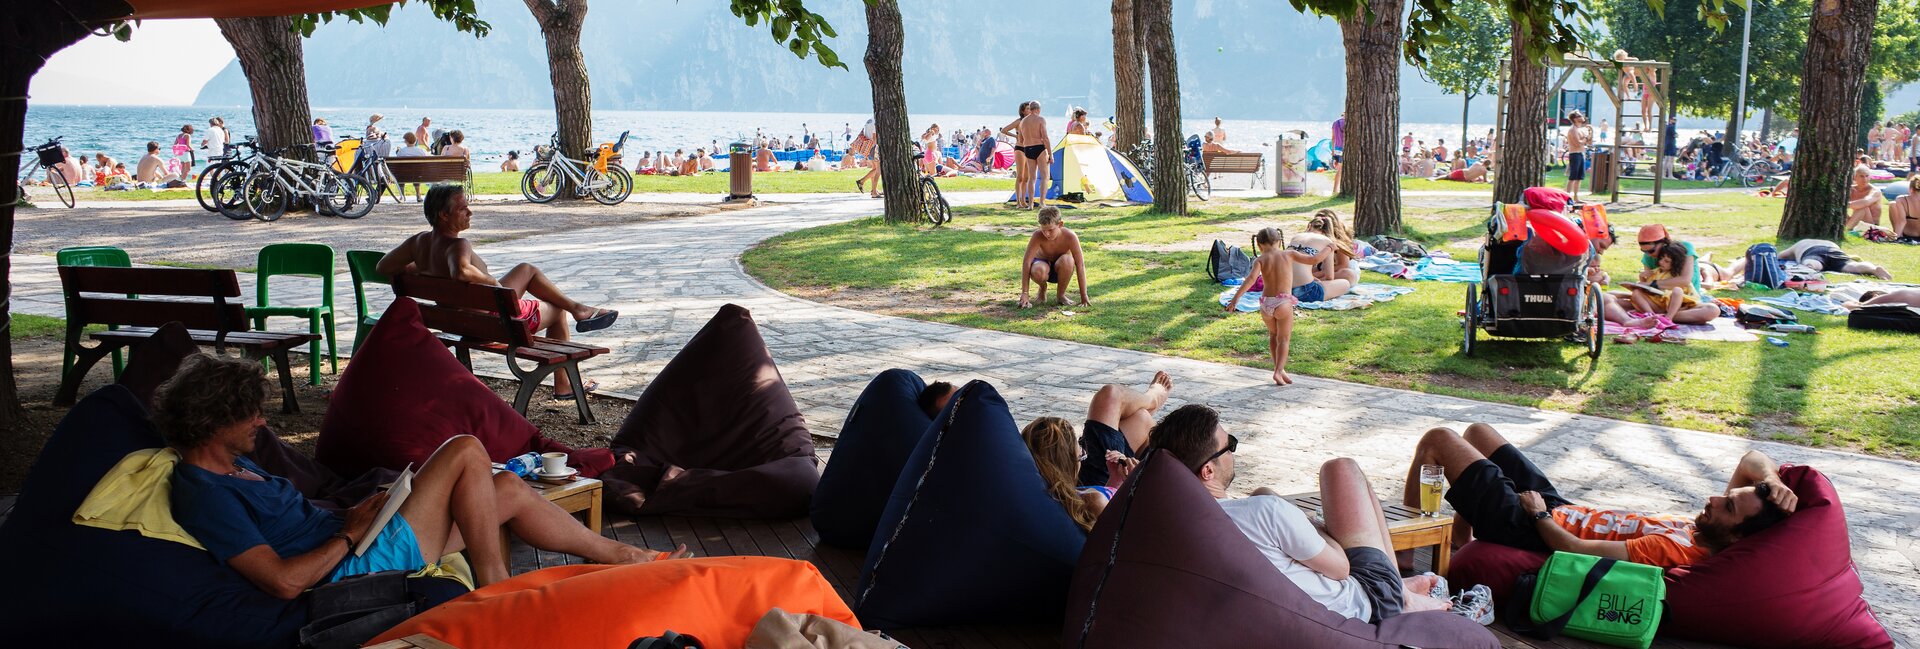 Garda Trentino - Riva del Garda - Relax vicino alla spiaggia
